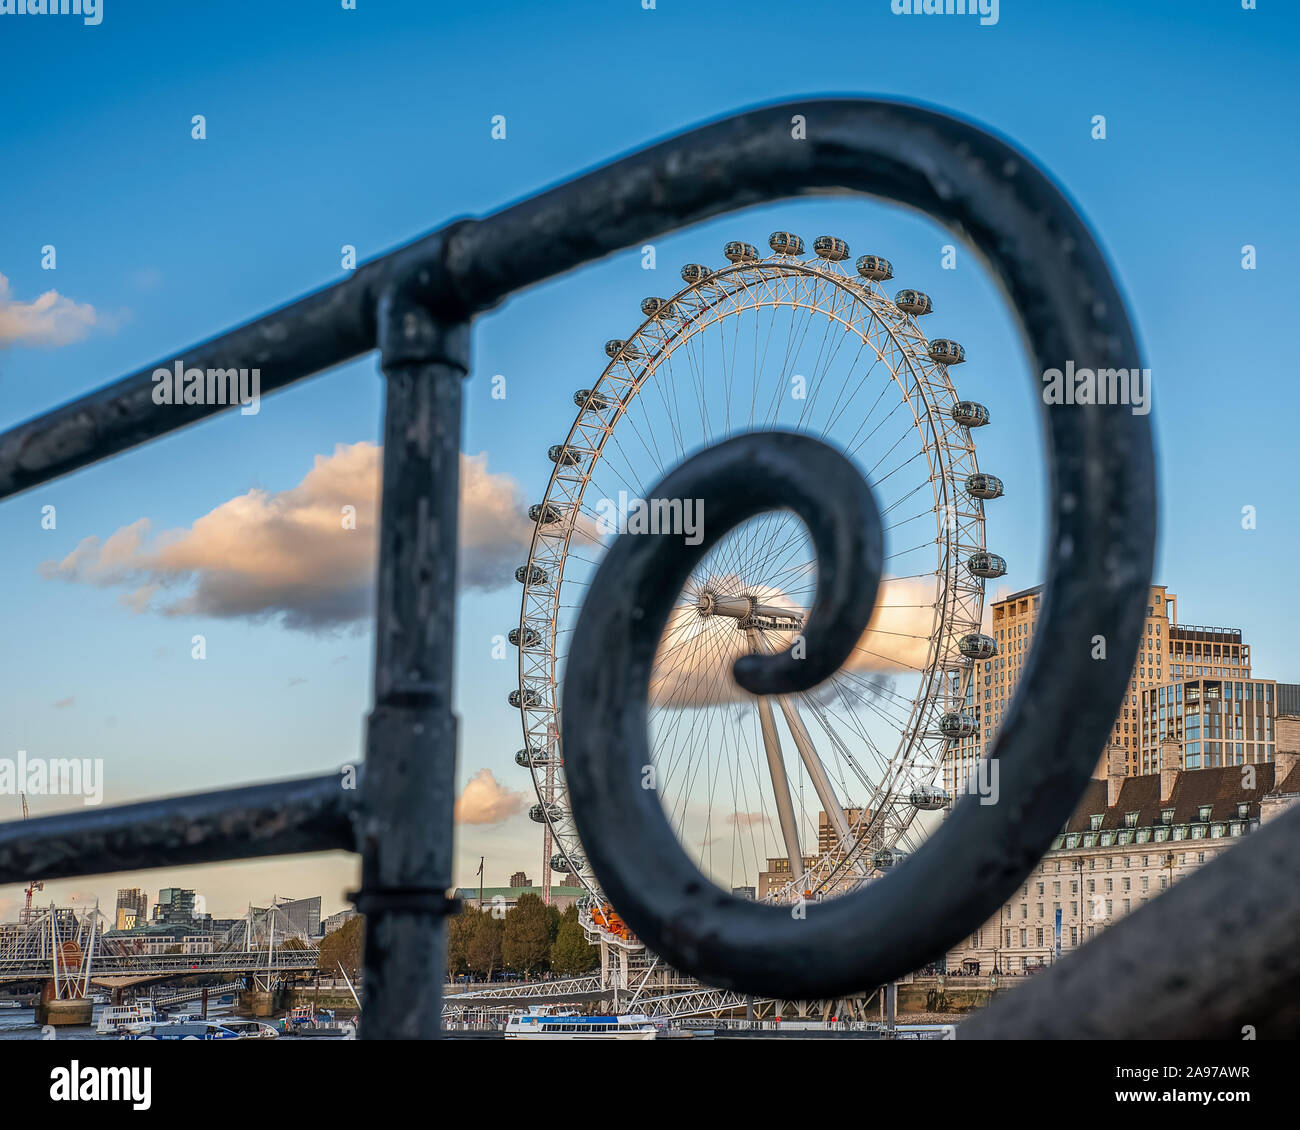 La Coca-cola London eye. Il London Eye con corrimano a spirale. Vista fantastica, colori d'autunno alberi e cielo blu con nuvole. Foto Stock